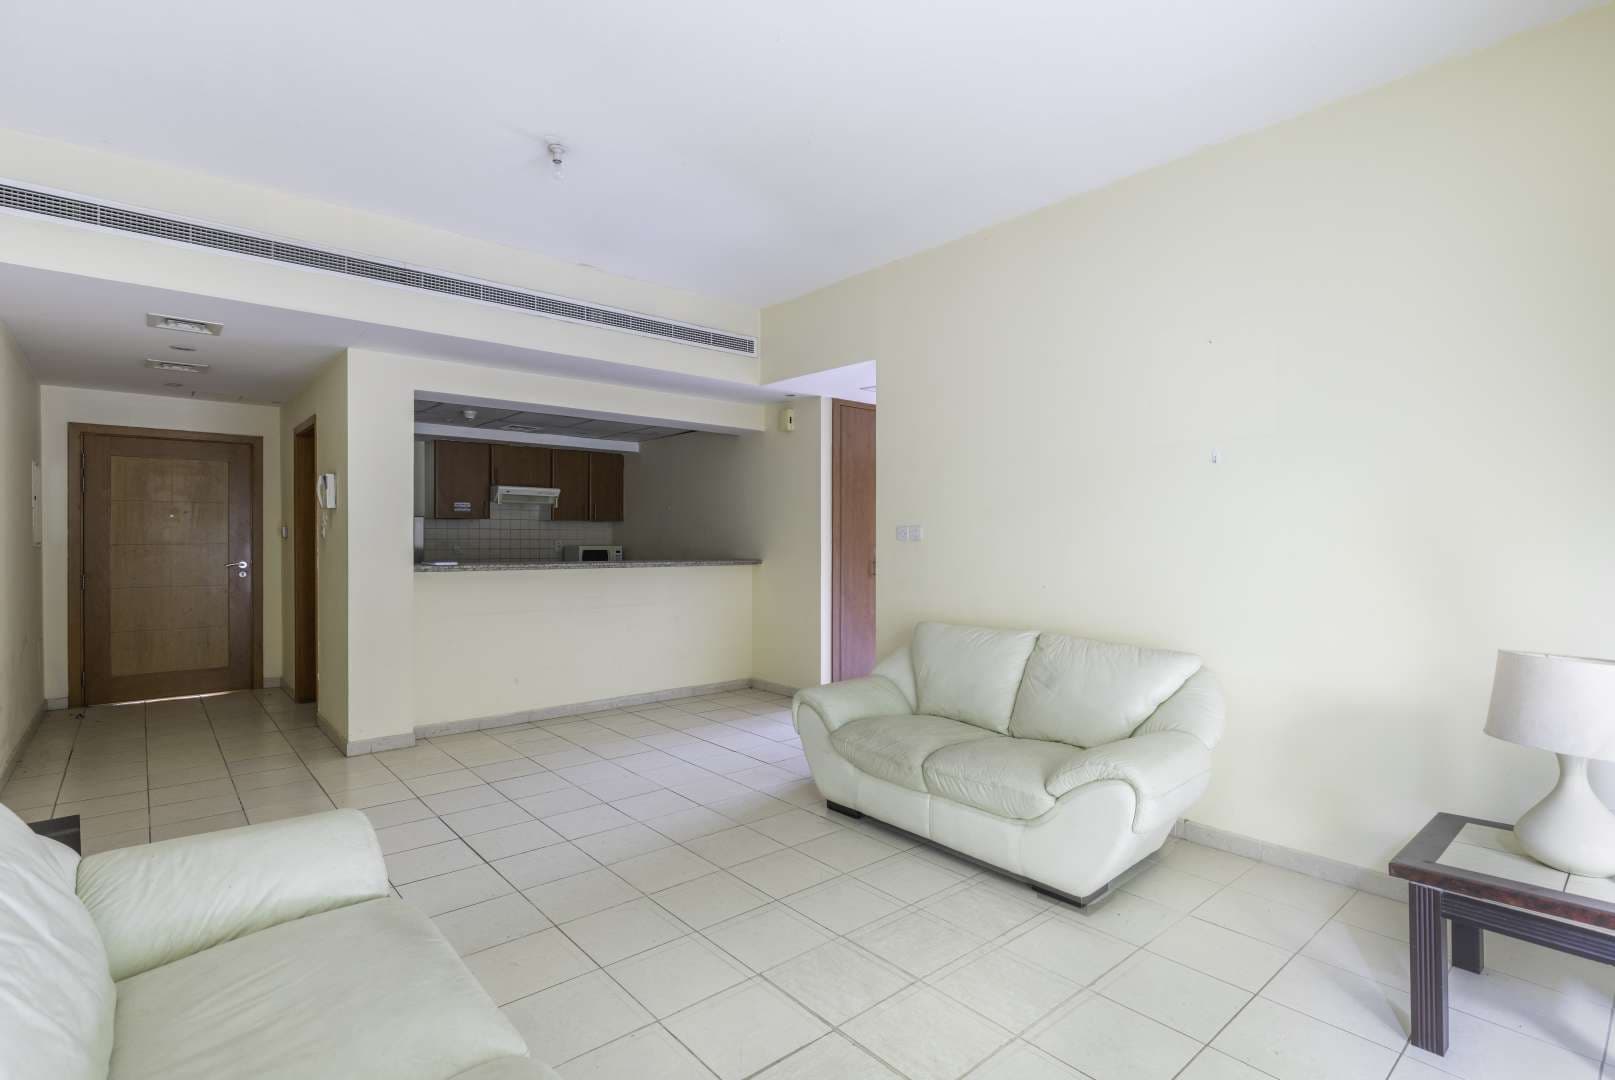 2 Bedroom Apartment For Sale Al Alka Lp09269 186db76d6d064800.jpg